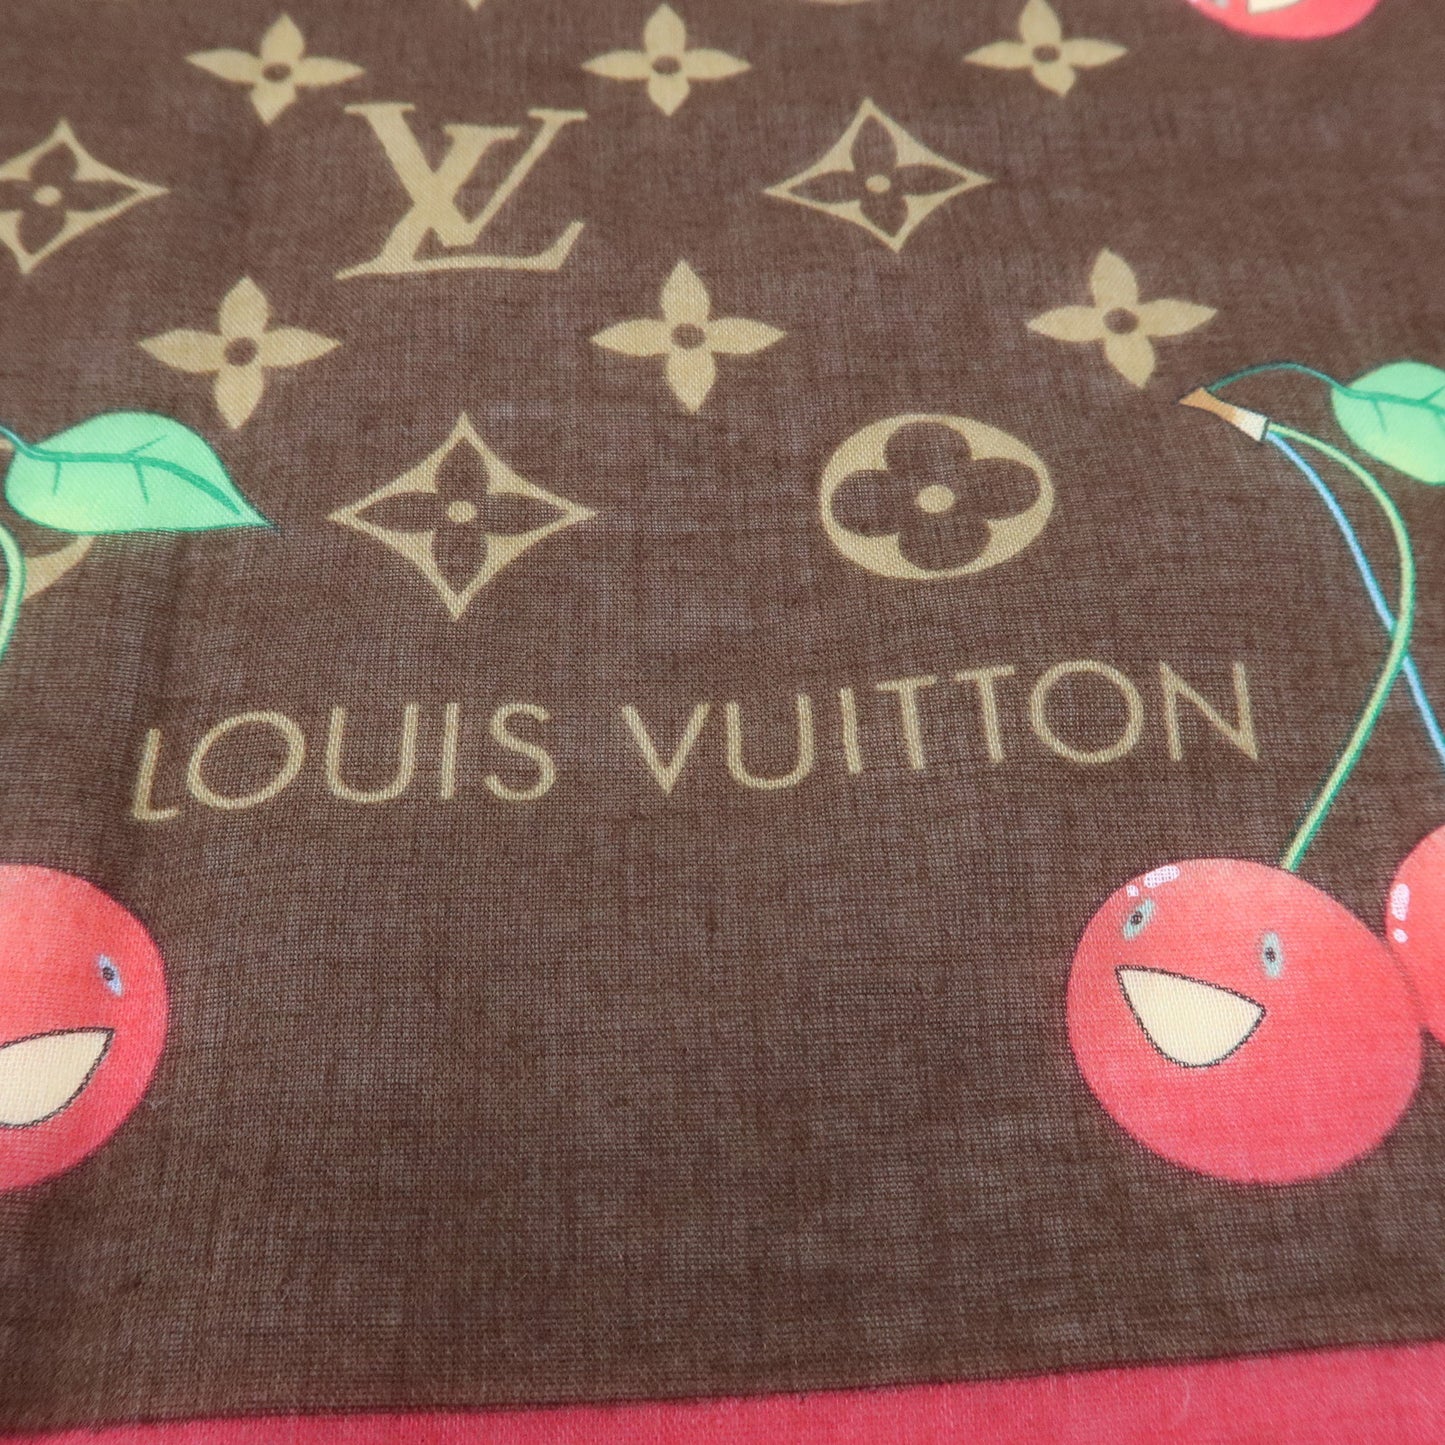 Authentic LOUIS VUITTON Scarf Monogram Cherry Cotton M71963 #S407214A